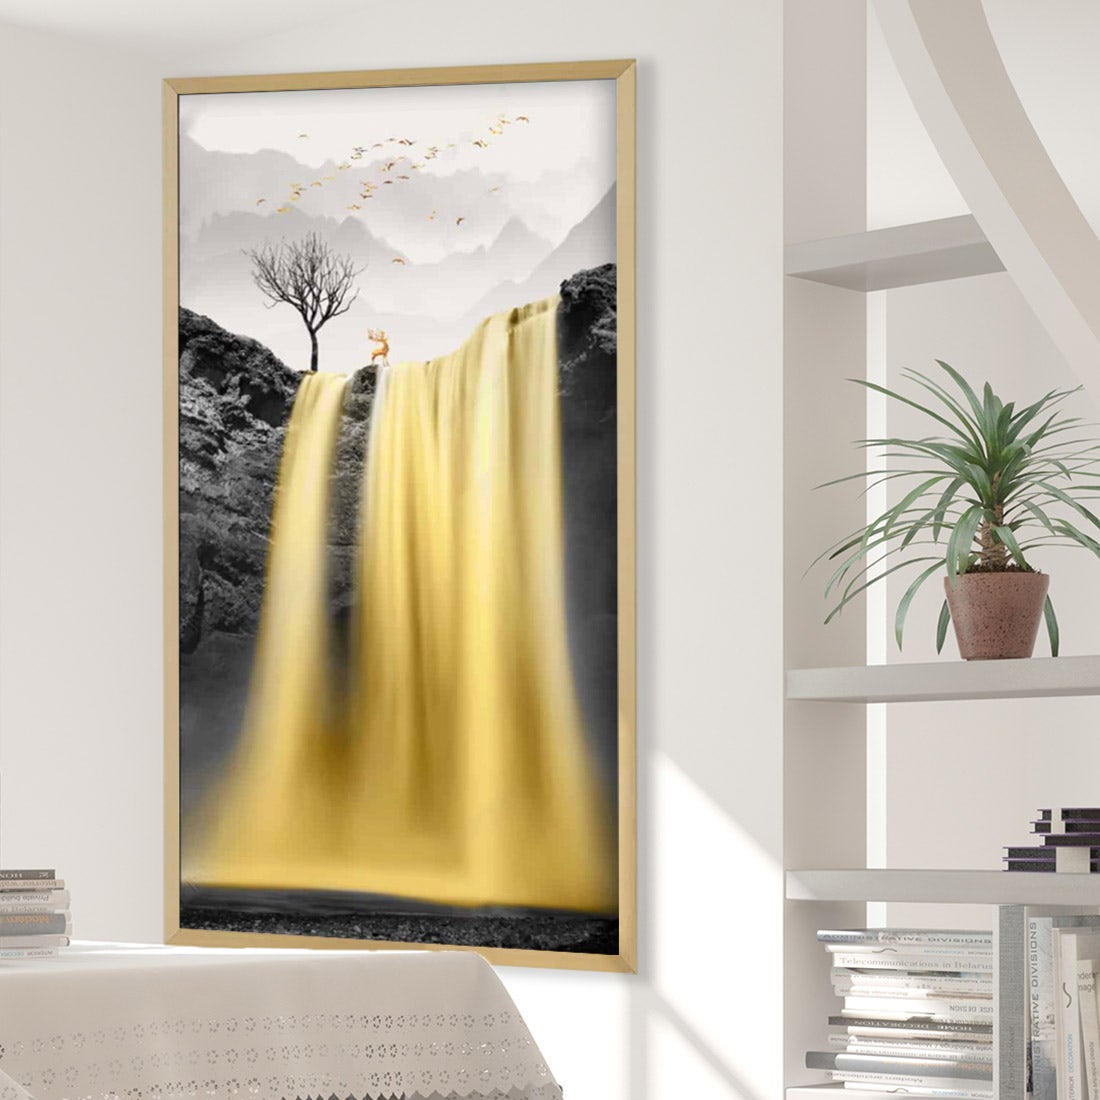 รูปพร้อมกรอบ DoseArt รุ่น Holy Waterfall 90x180 cm-01